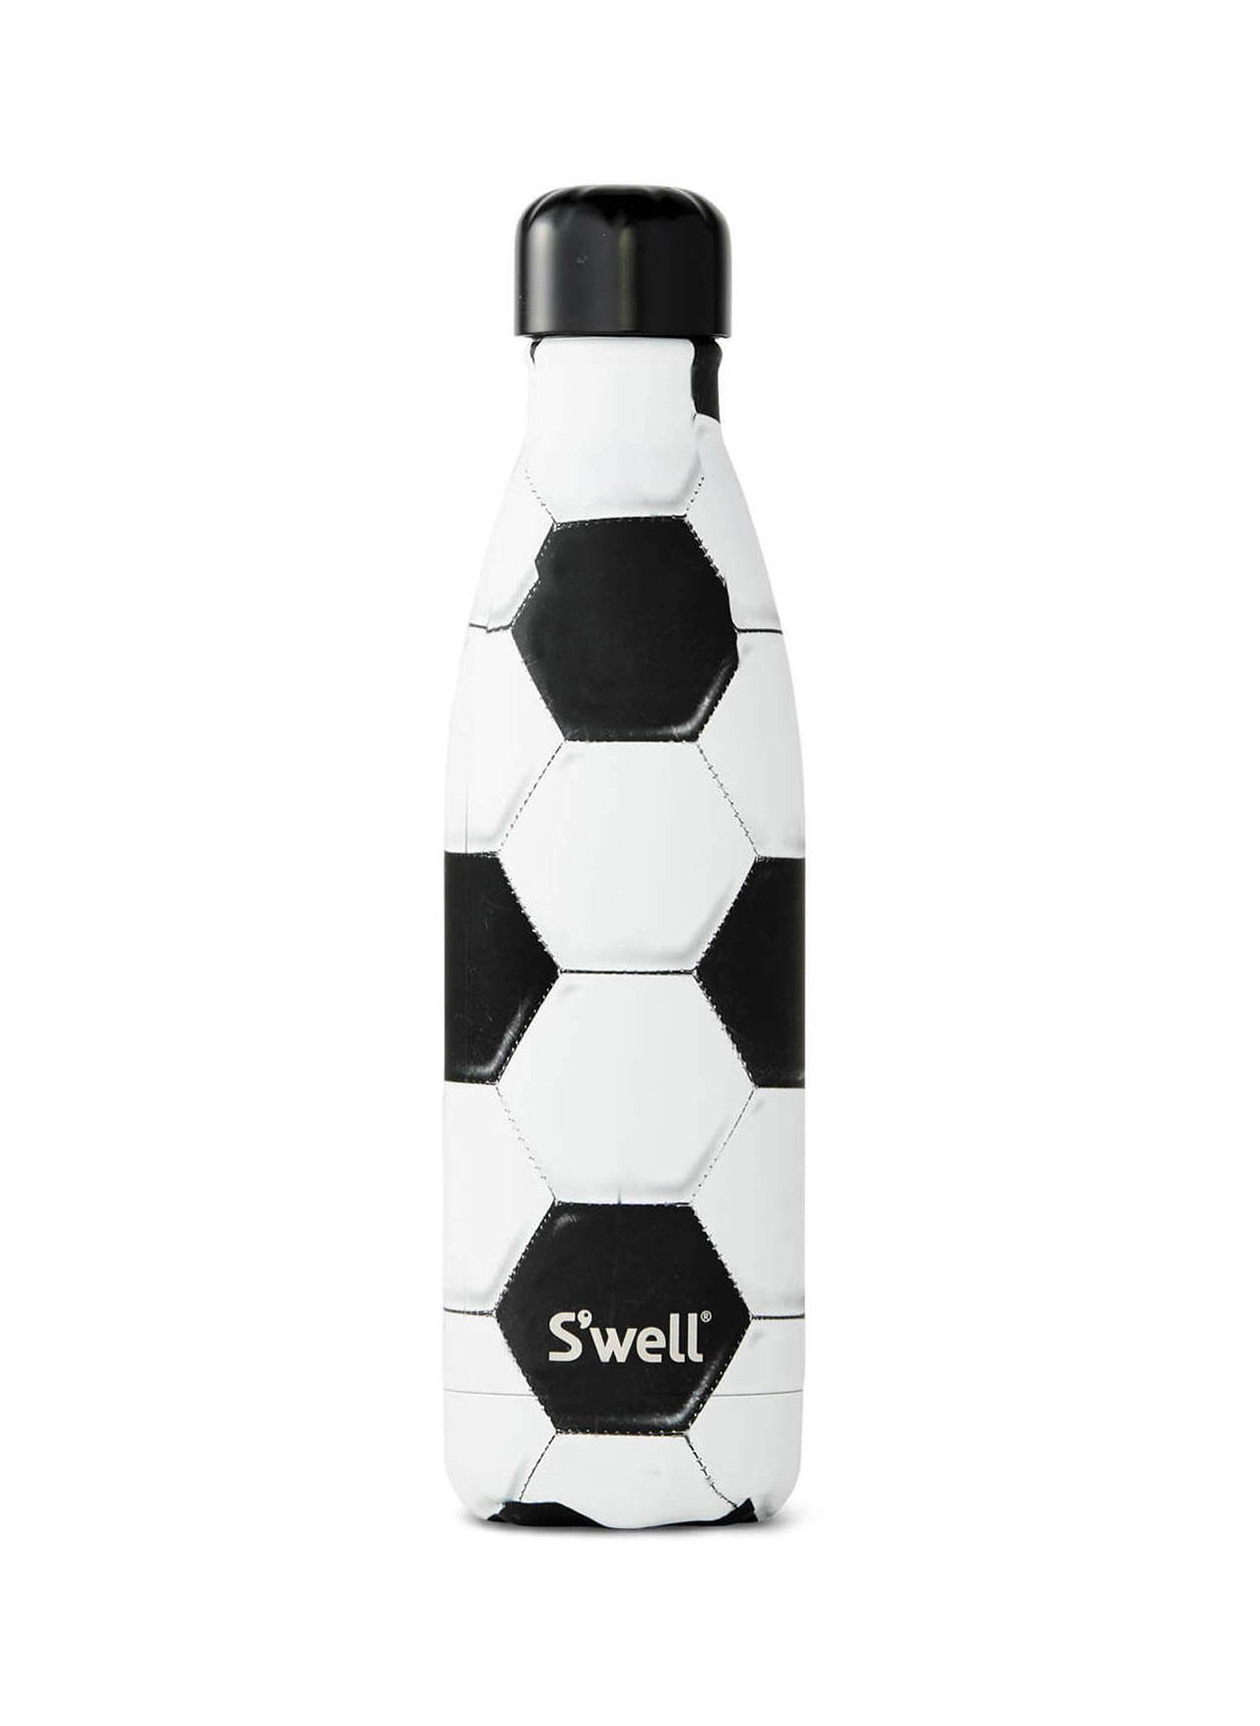 S'well Goals 17 oz Sports Bottle